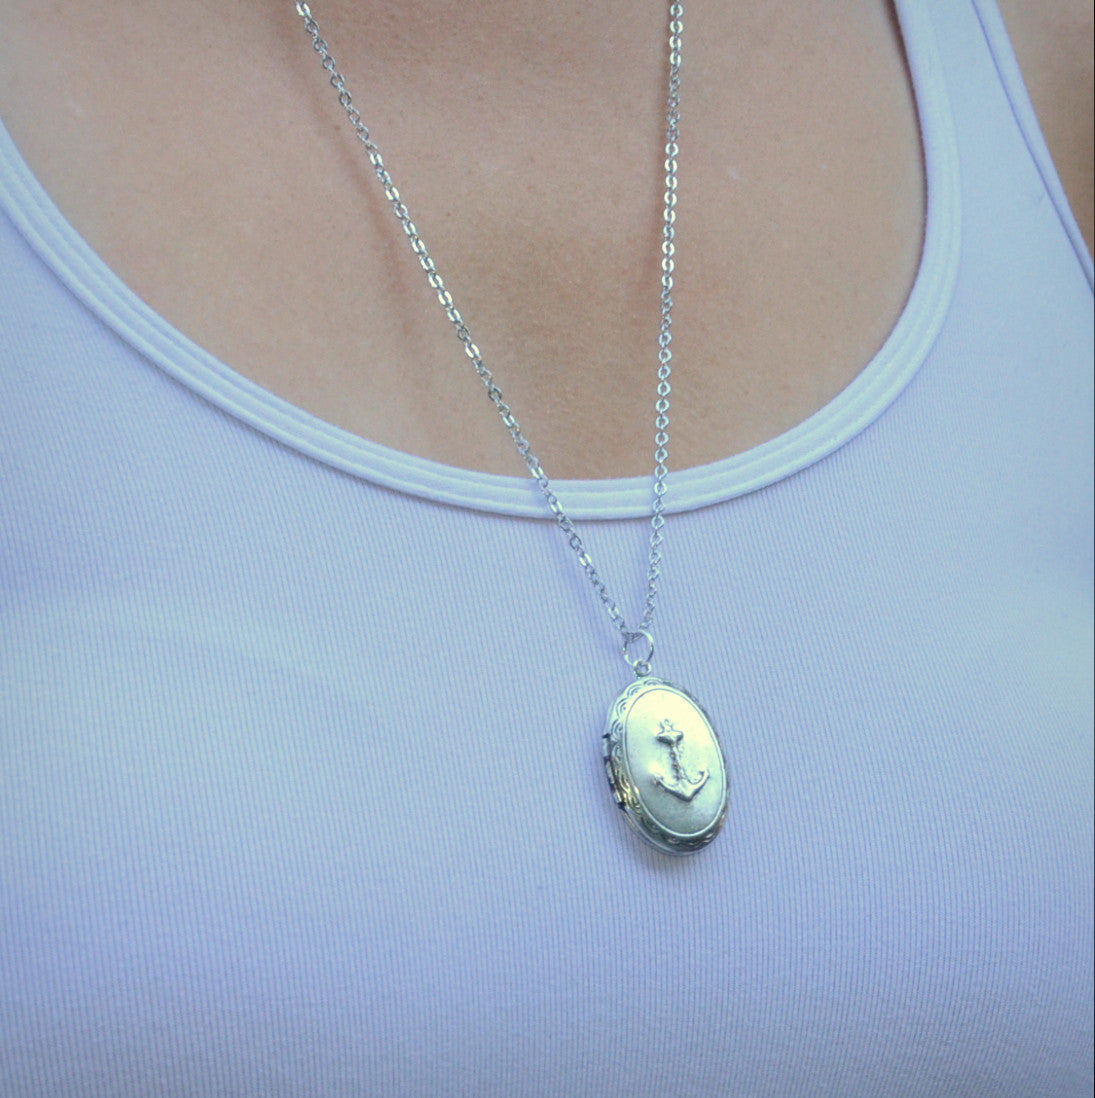 Anchor Locket Necklace - Gwen Delicious Jewelry Designs